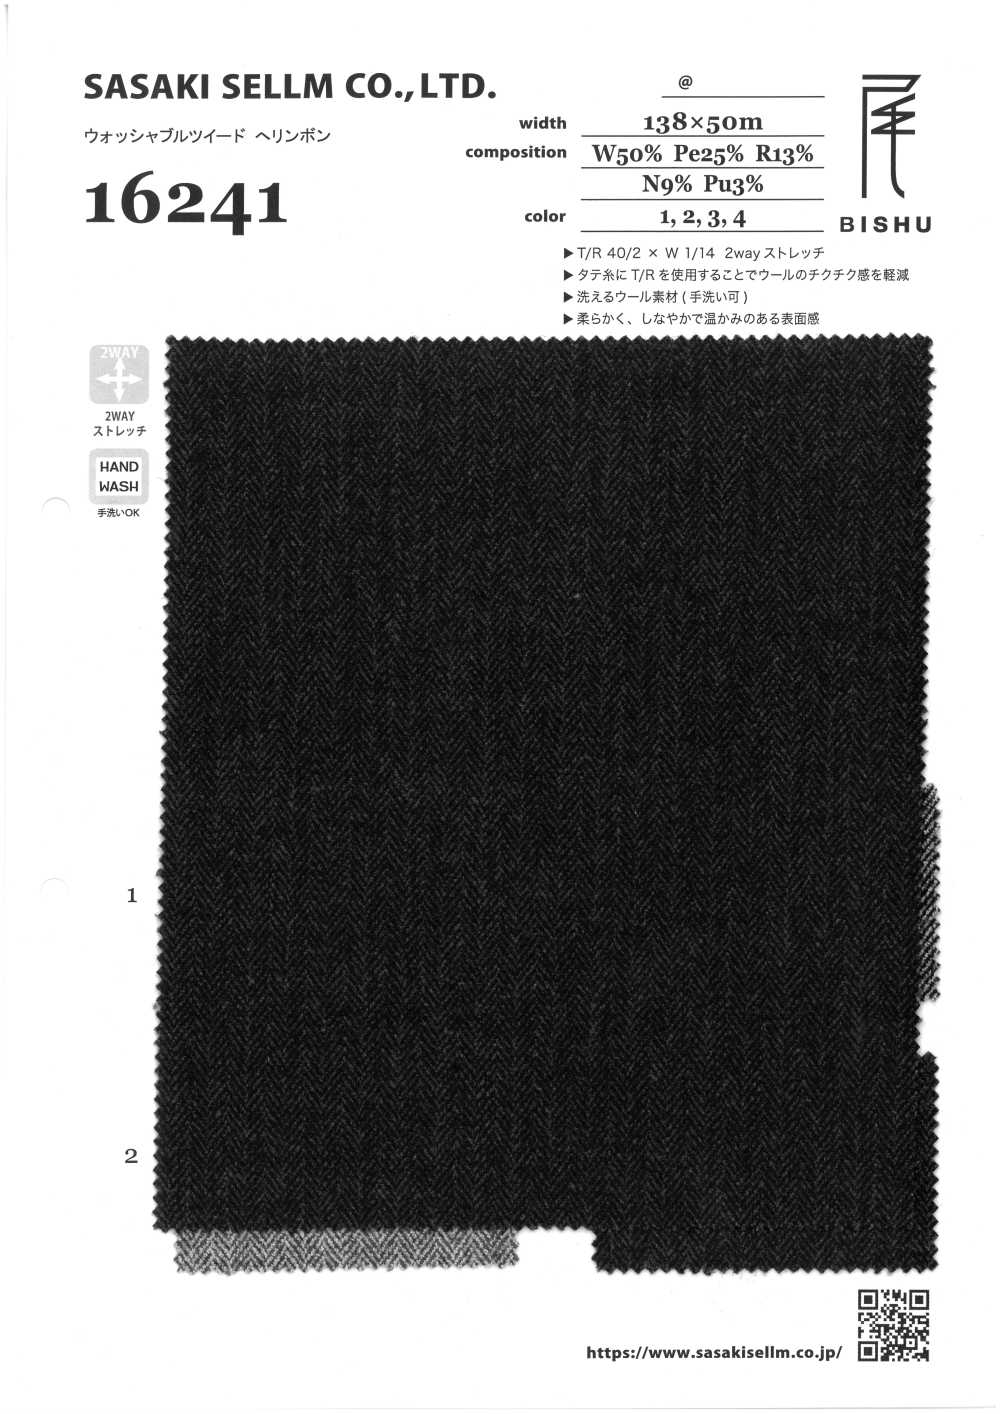 16241-1 Tweed Lavable 2WAY Espiga[Fabrica Textil] SASAKISELLM